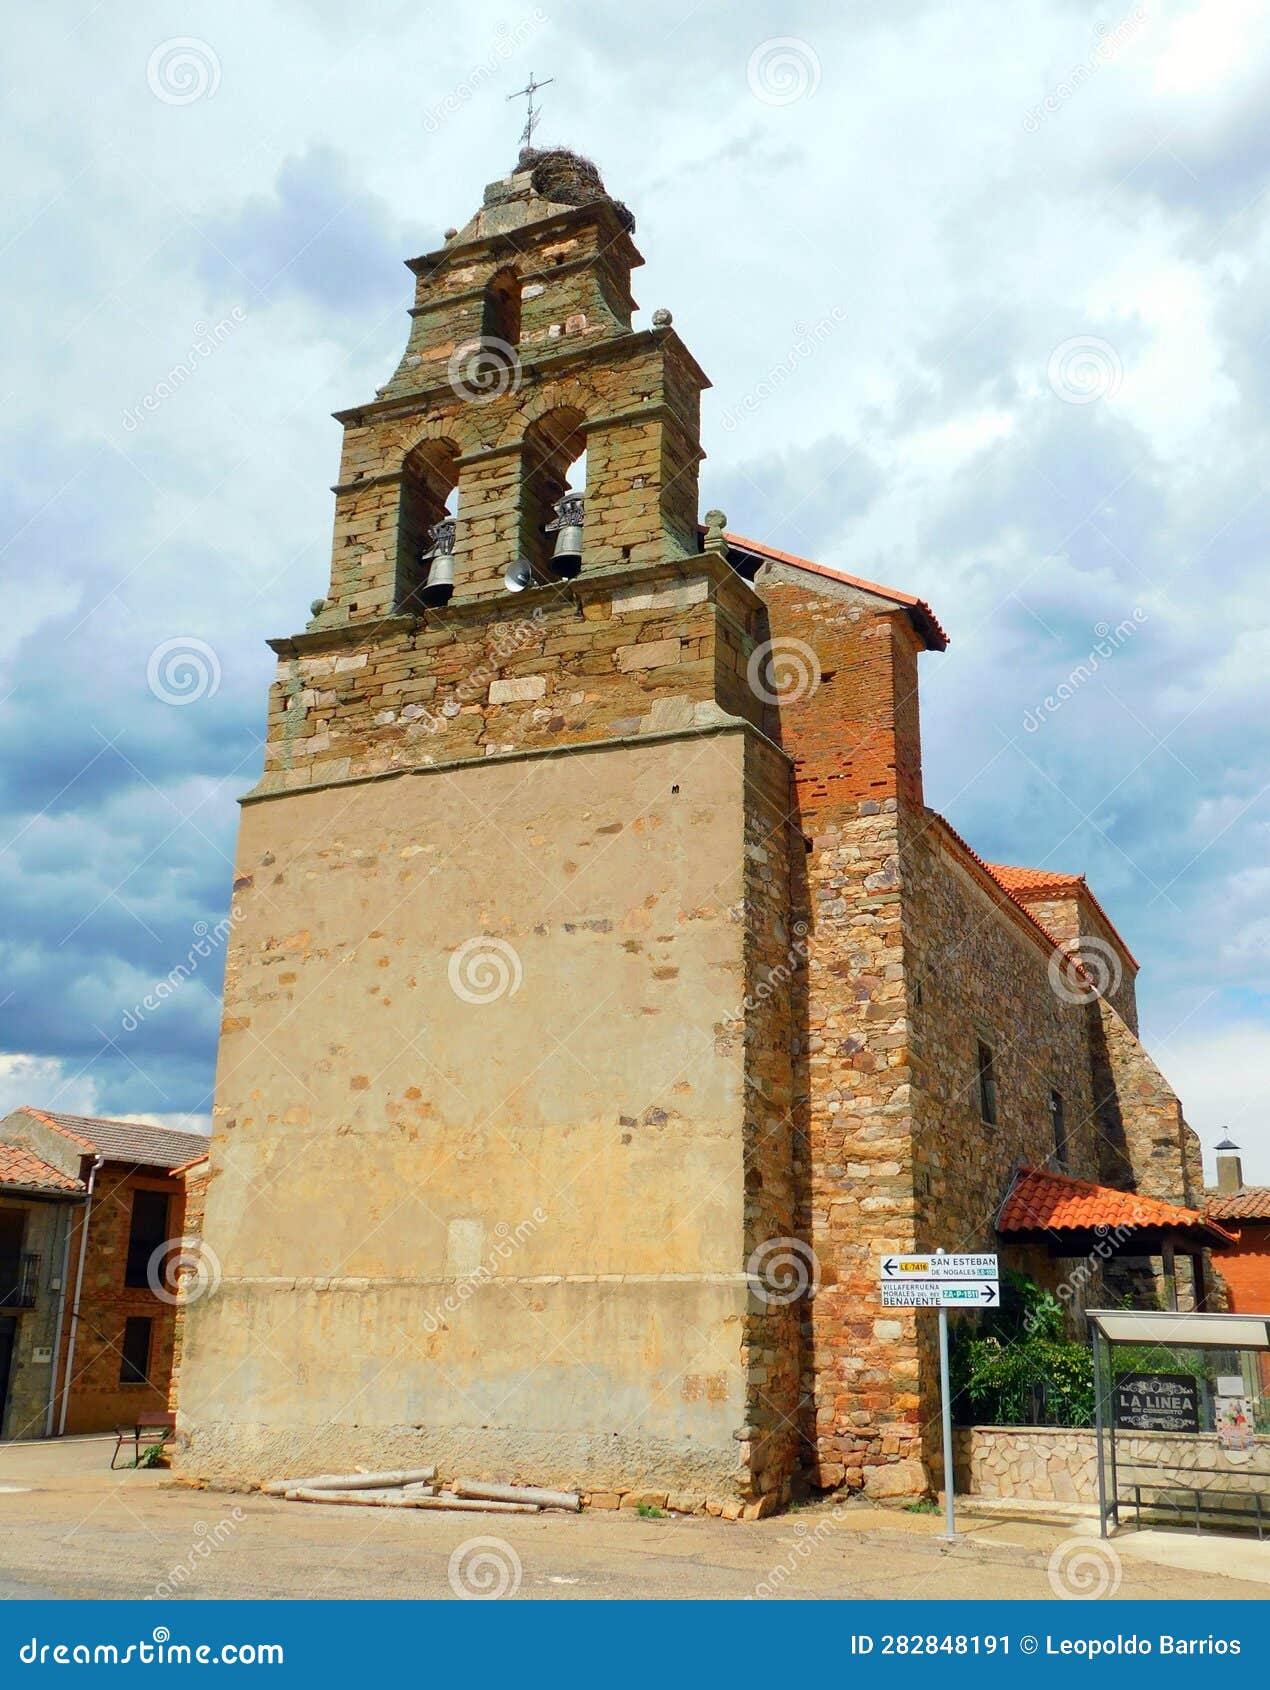 church of alcubilla de nogales, zamora, spain